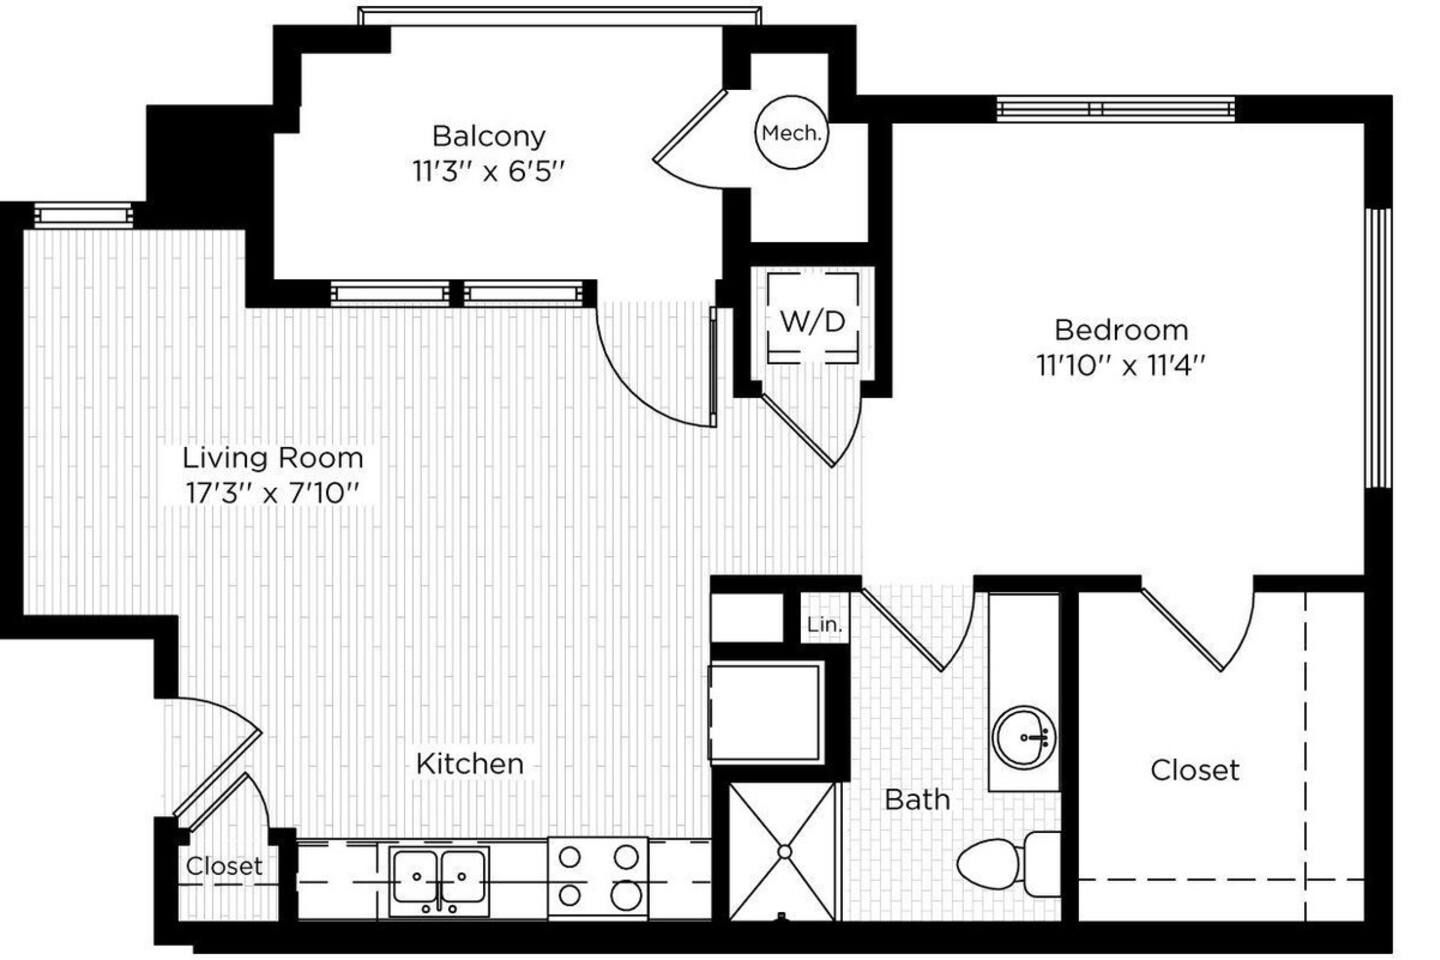 Floorplan diagram for STUDIO WEST, showing Studio